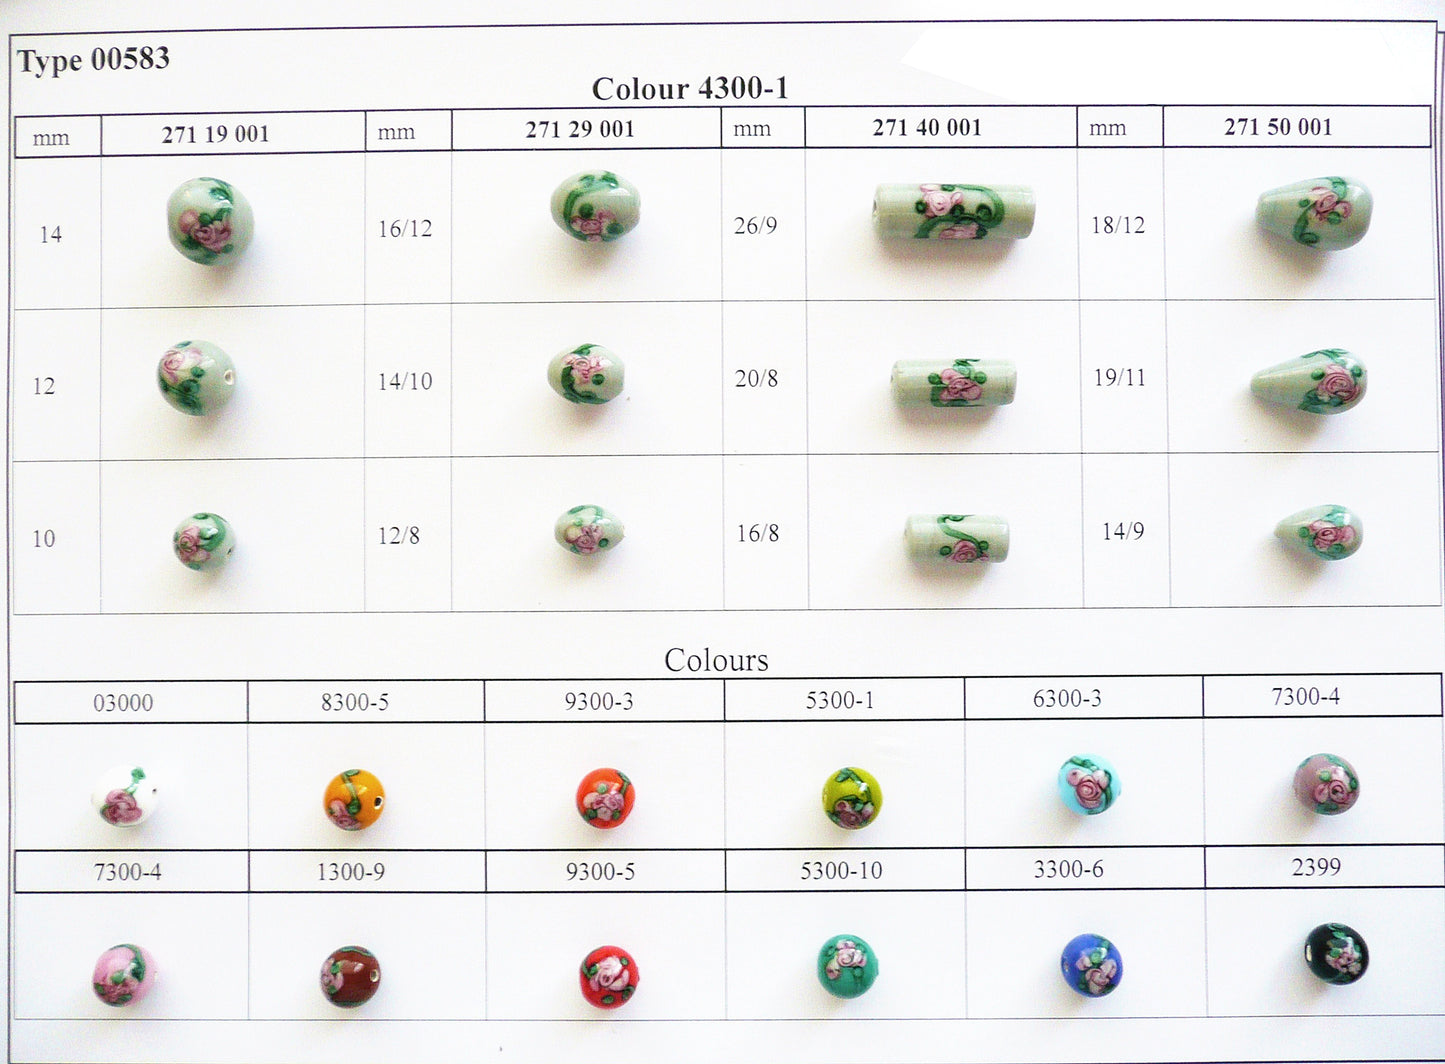 30 pcs Lampwork Beads 583 / Cylinder (271-40-001), Handmade, Preciosa Glass, Czech Republic